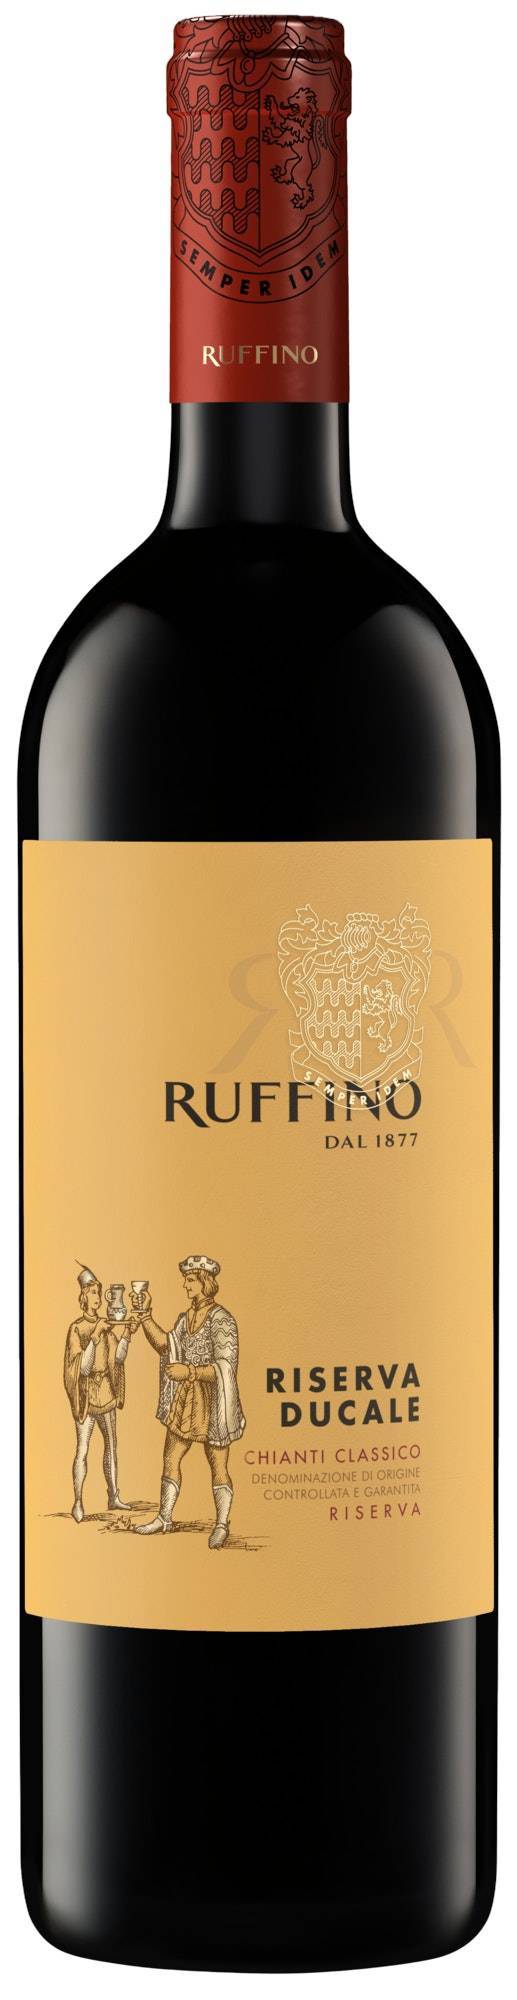 Ruffino Riserva Ducale Chianti Classico Docg Sangiovese Blend Italian Red Wine (750 ml)